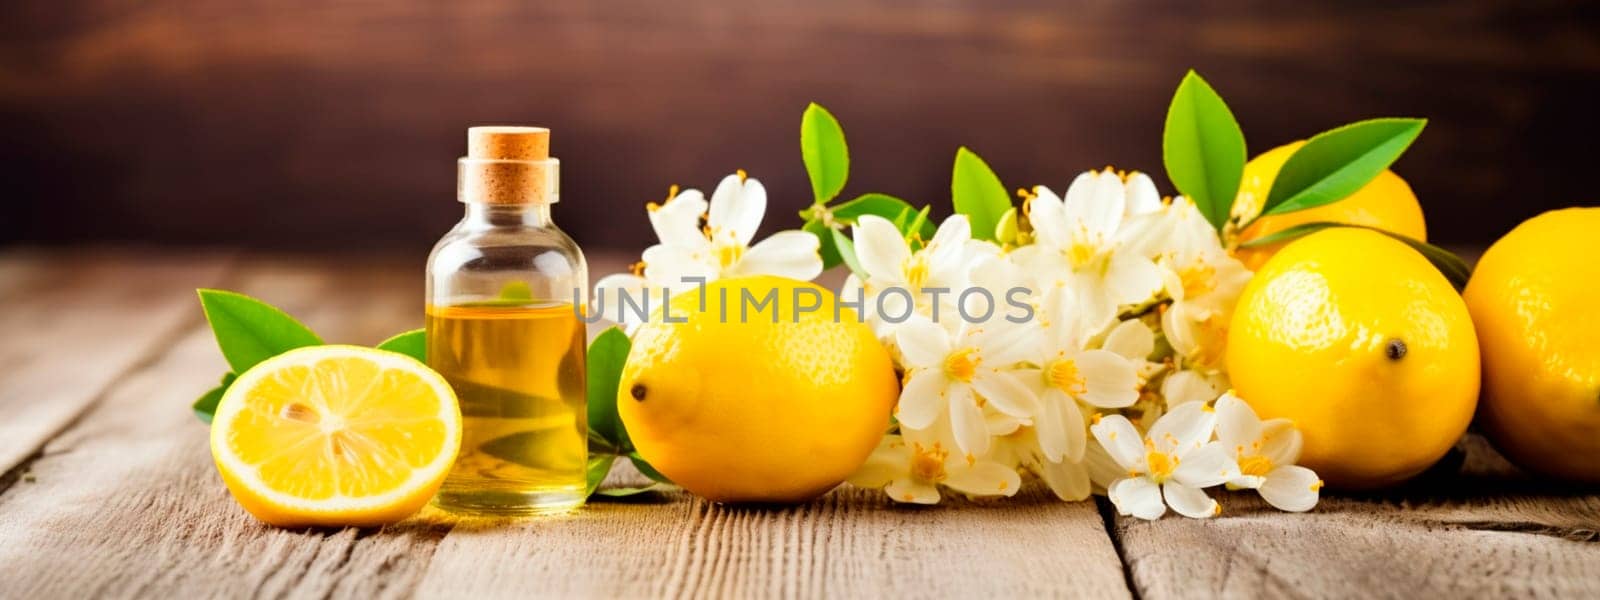 Lemon essential oil in a bottle. Generative AI, by yanadjana